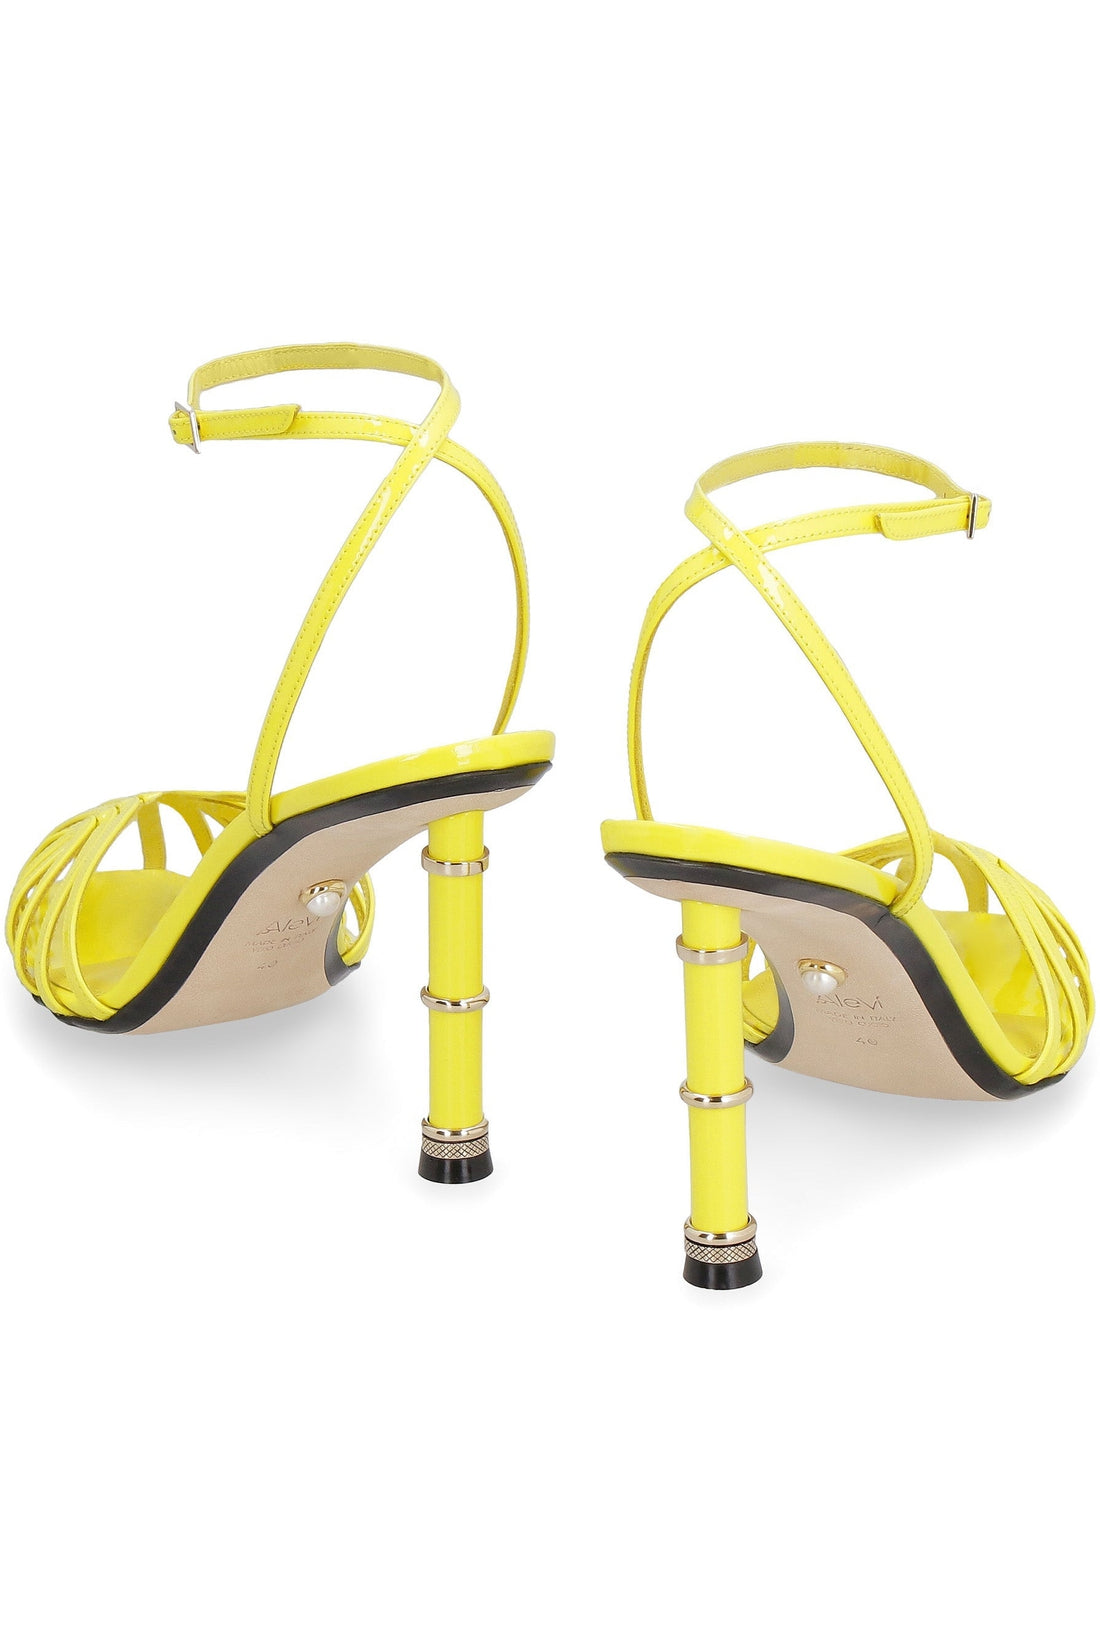 Alevì-OUTLET-SALE-Denise patent leather sandals-ARCHIVIST